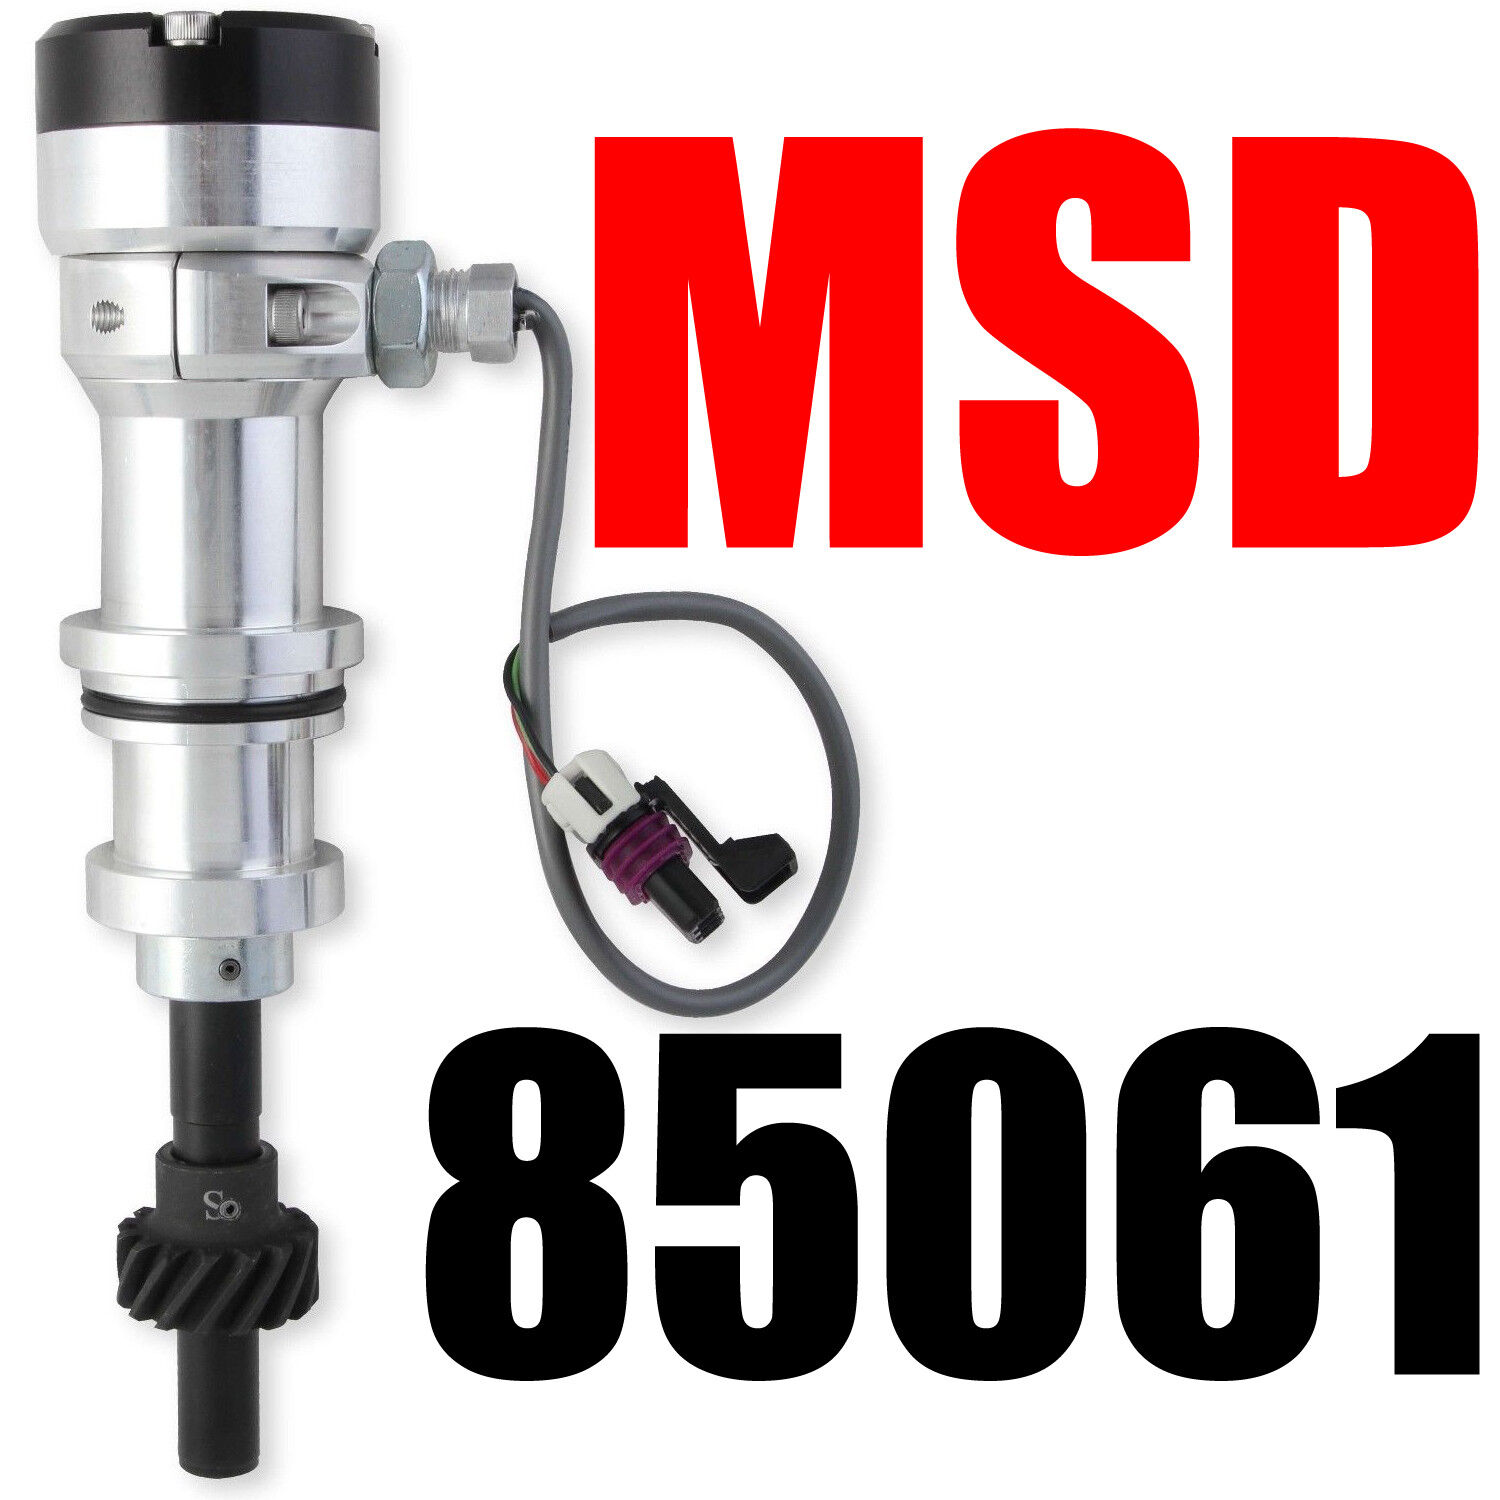 MSD 85061 FORD CAM SYNC PLUG 351W WITH STEEL GEAR